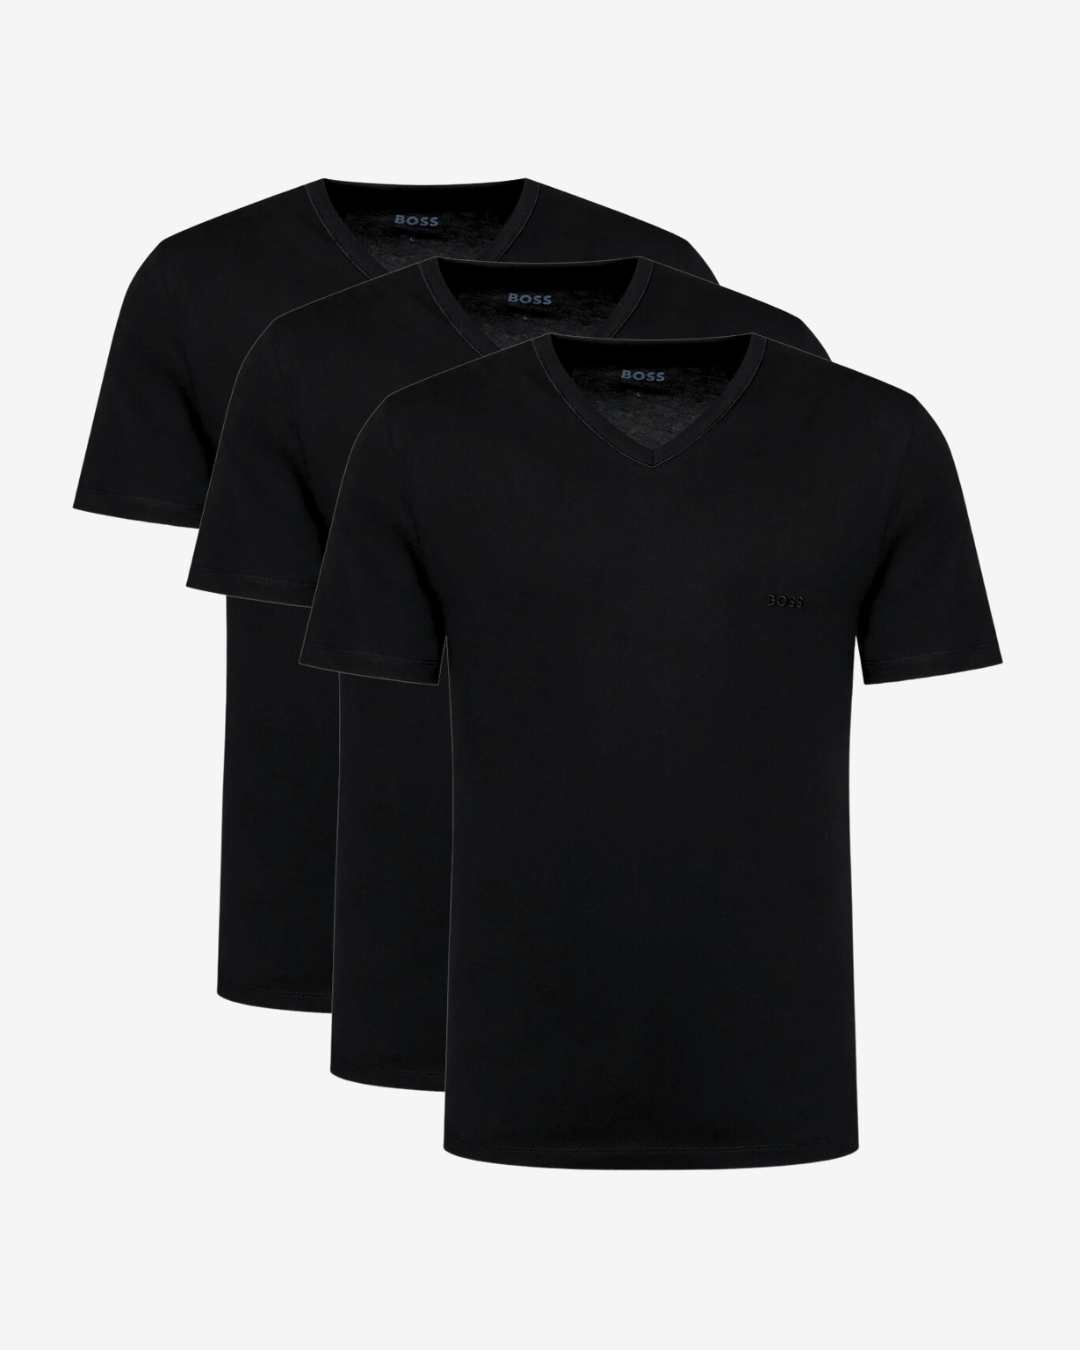 Se Hugo Boss 3-pak v-hals t-shirt - Sort - Str. M - Modish.dk hos Modish.dk